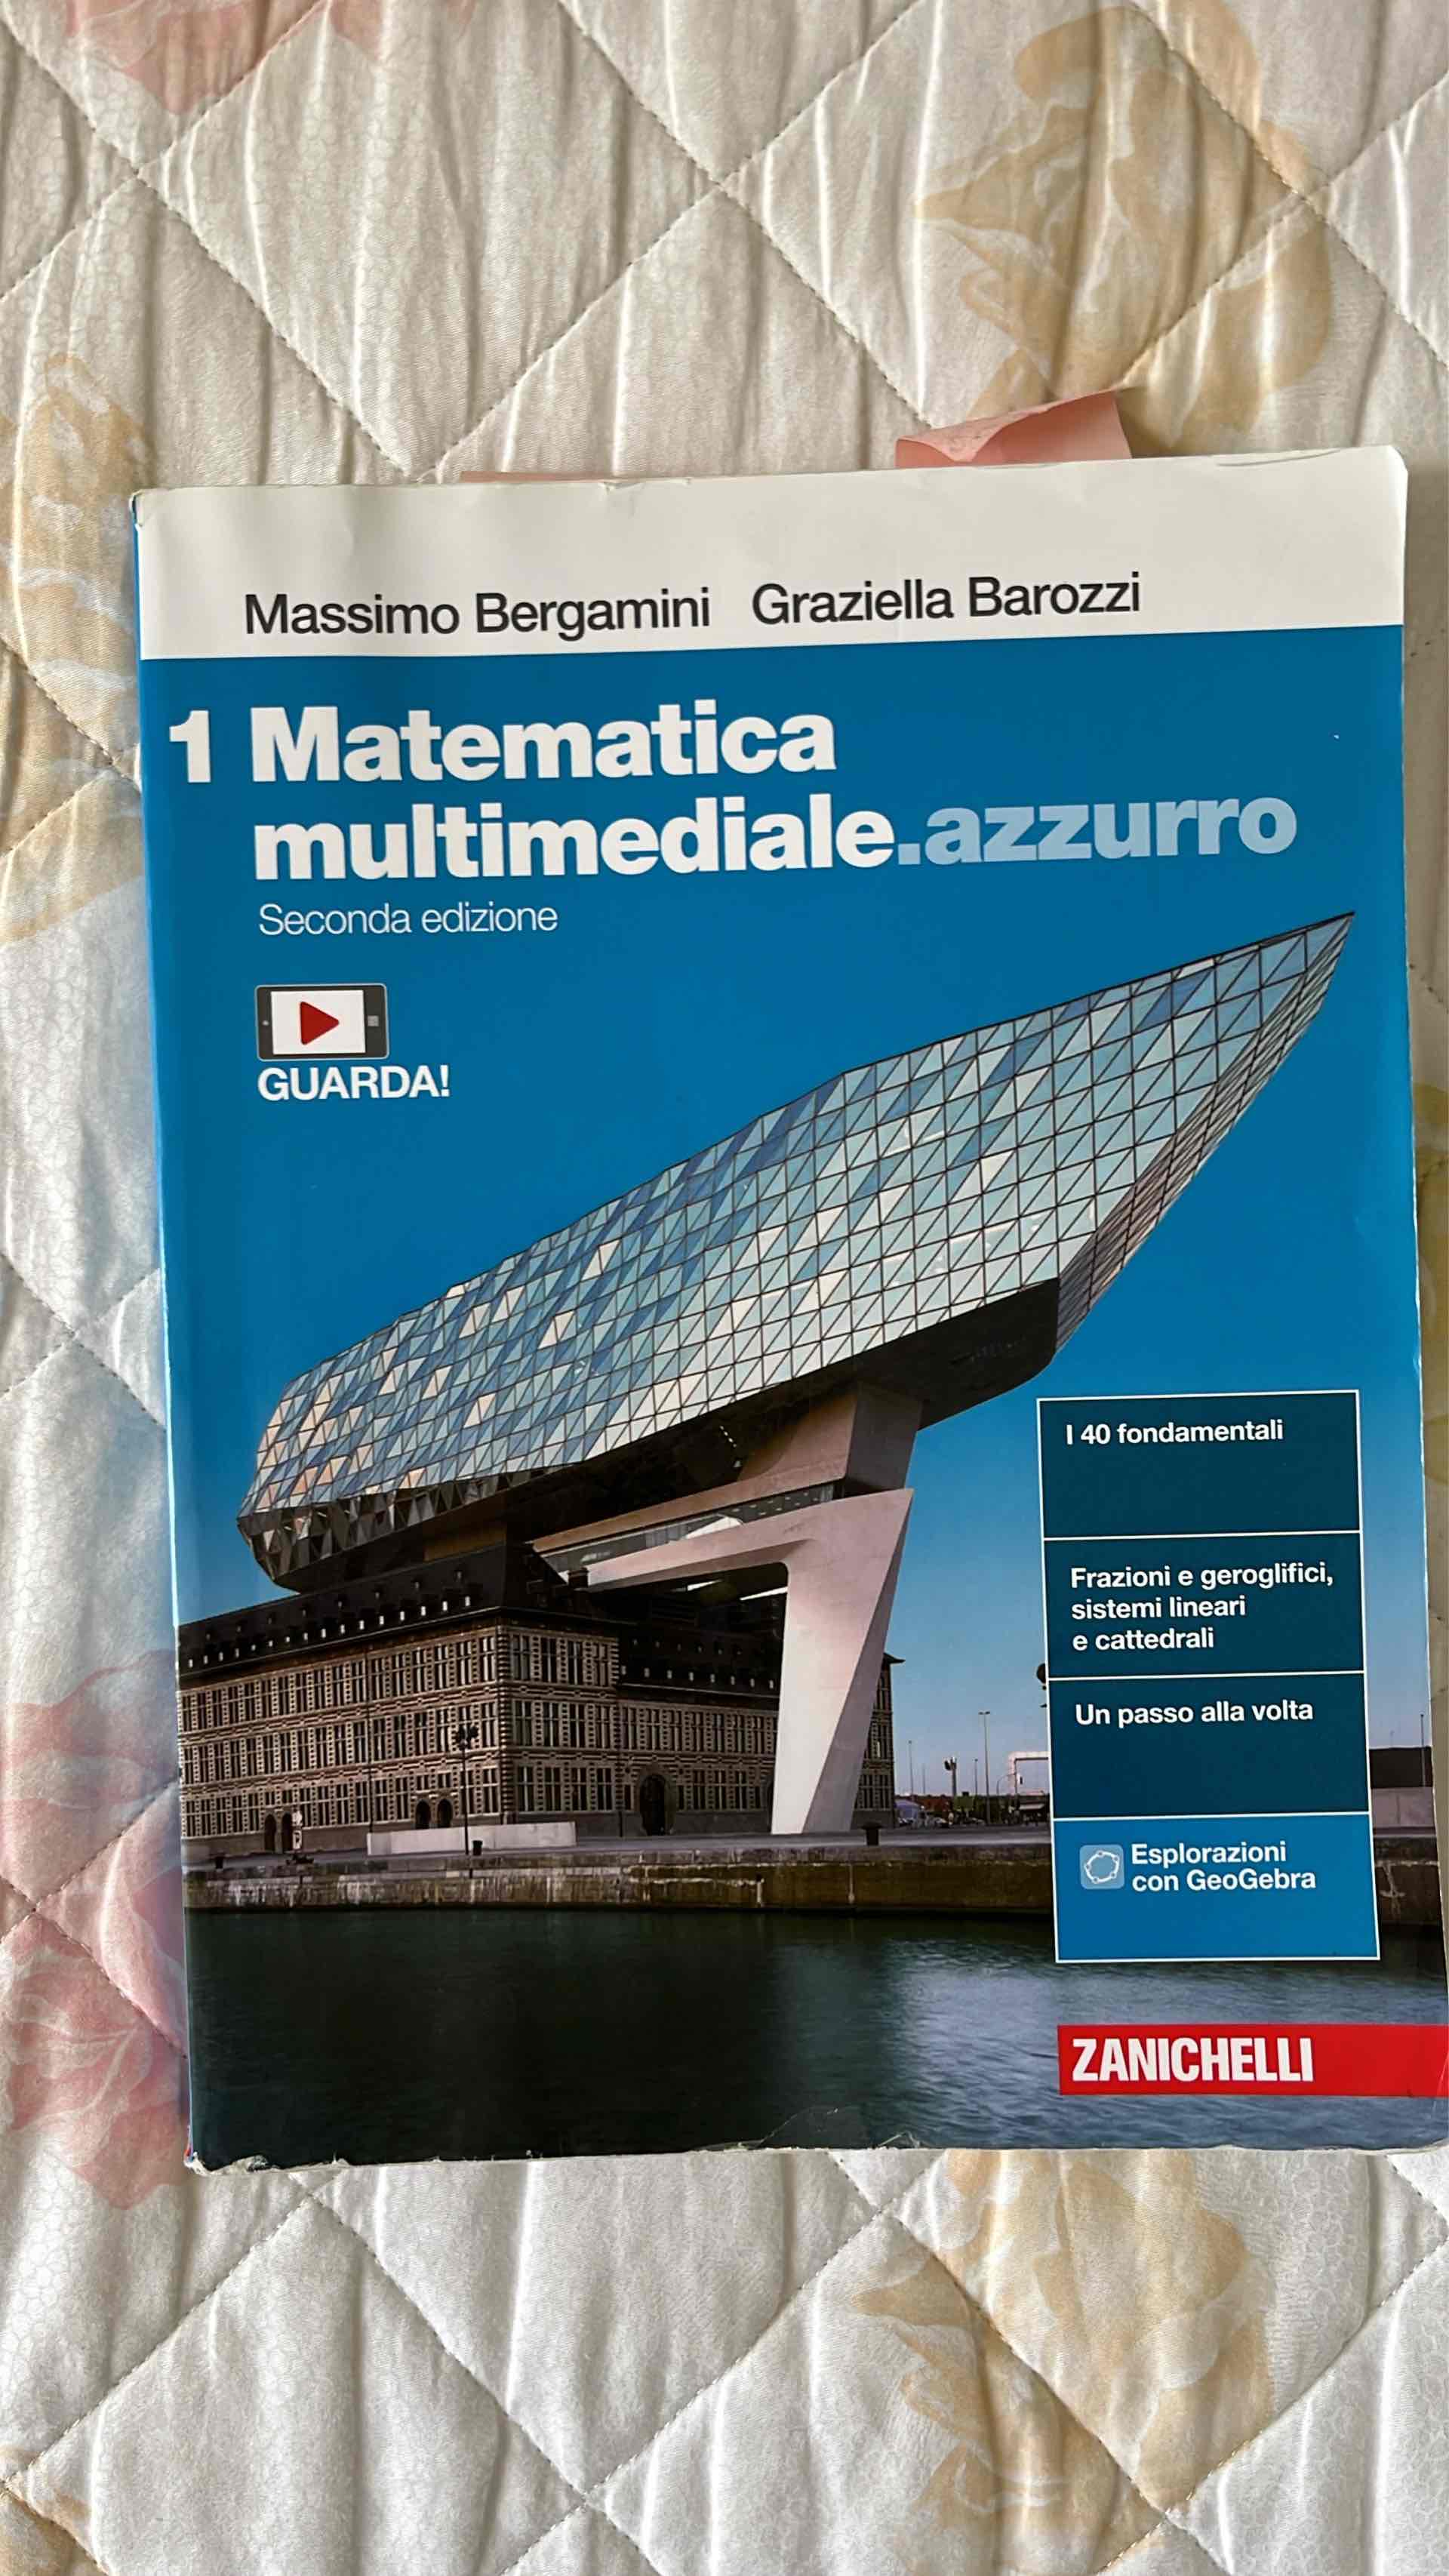 Matematica Multimendiale azzurro classe 1 libro usato